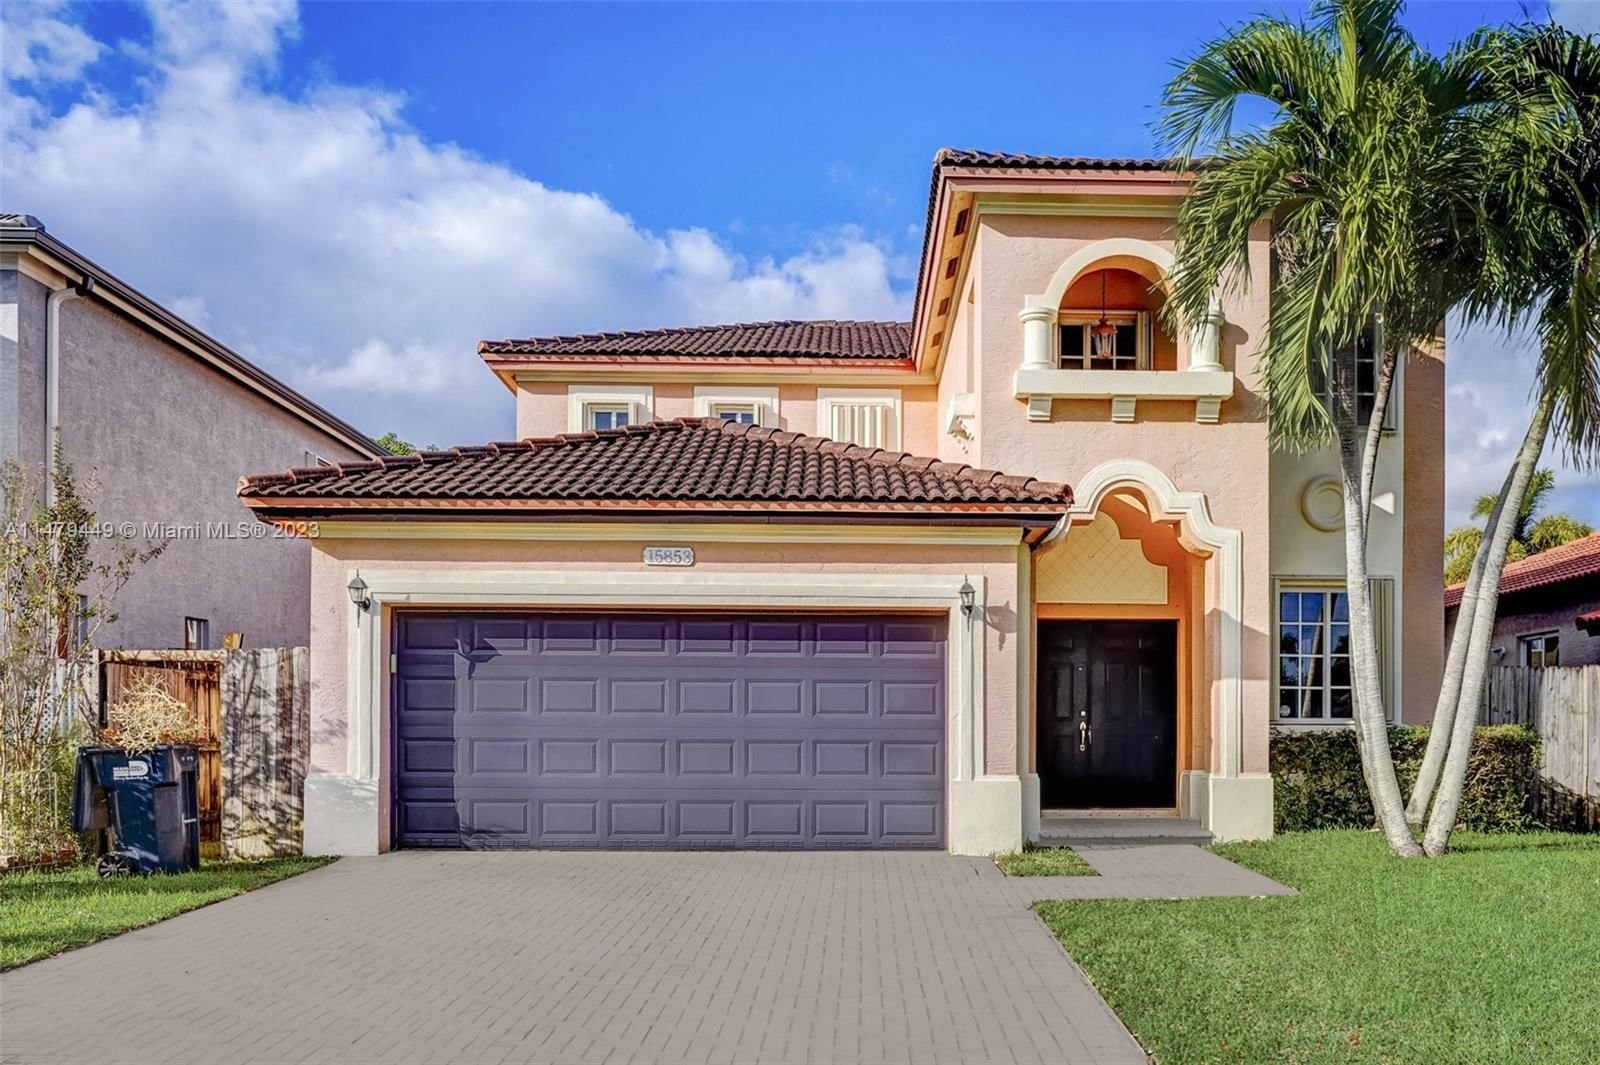 Real estate property located at 15853 140th St, Miami-Dade County, MILON VENTURE, Miami, FL